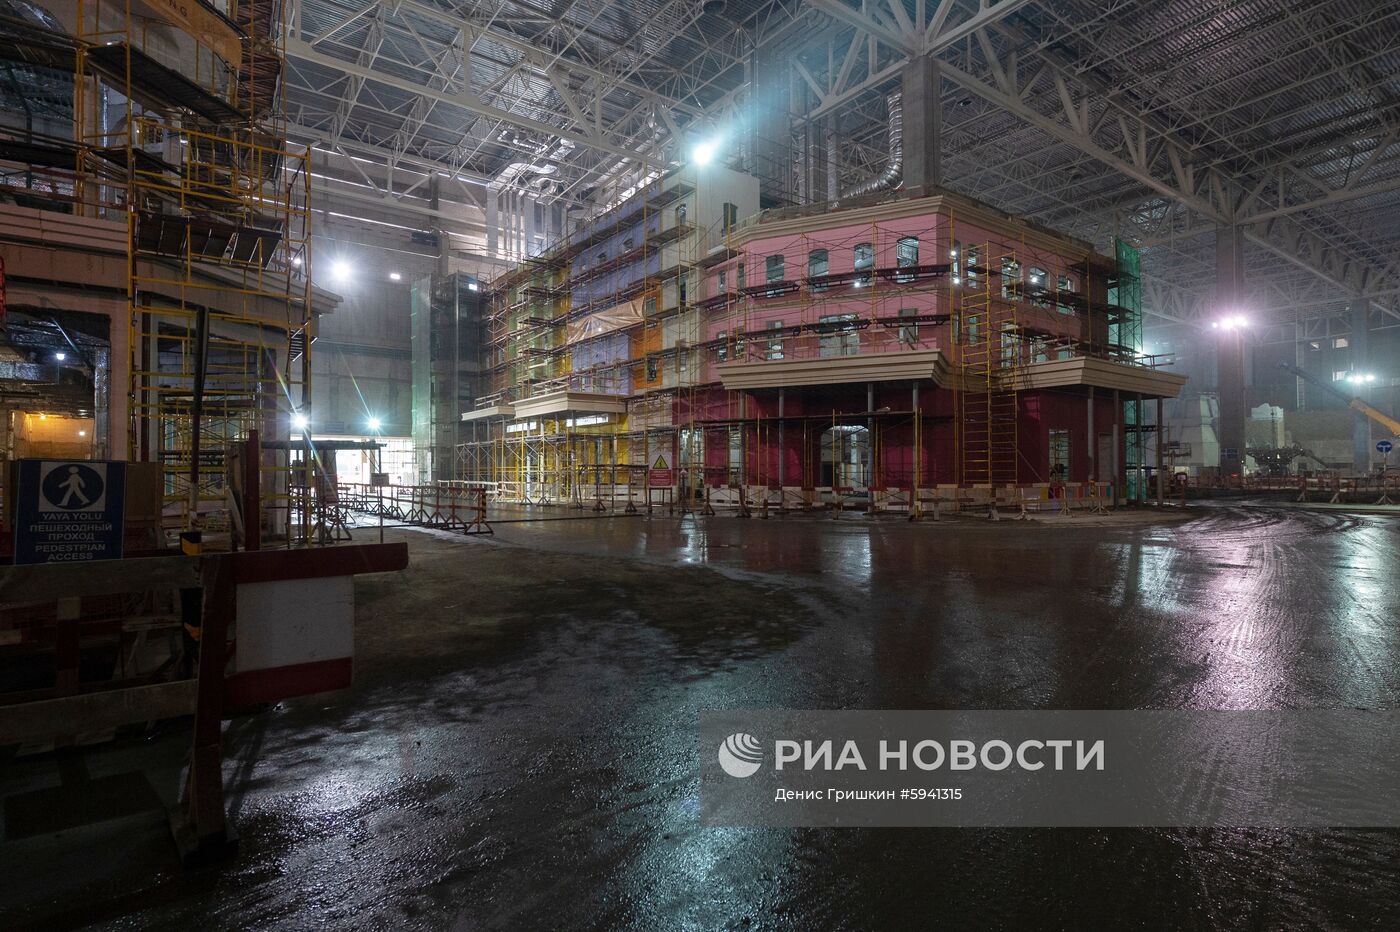 Строительство парка развлечений "Остров мечты" в Москве